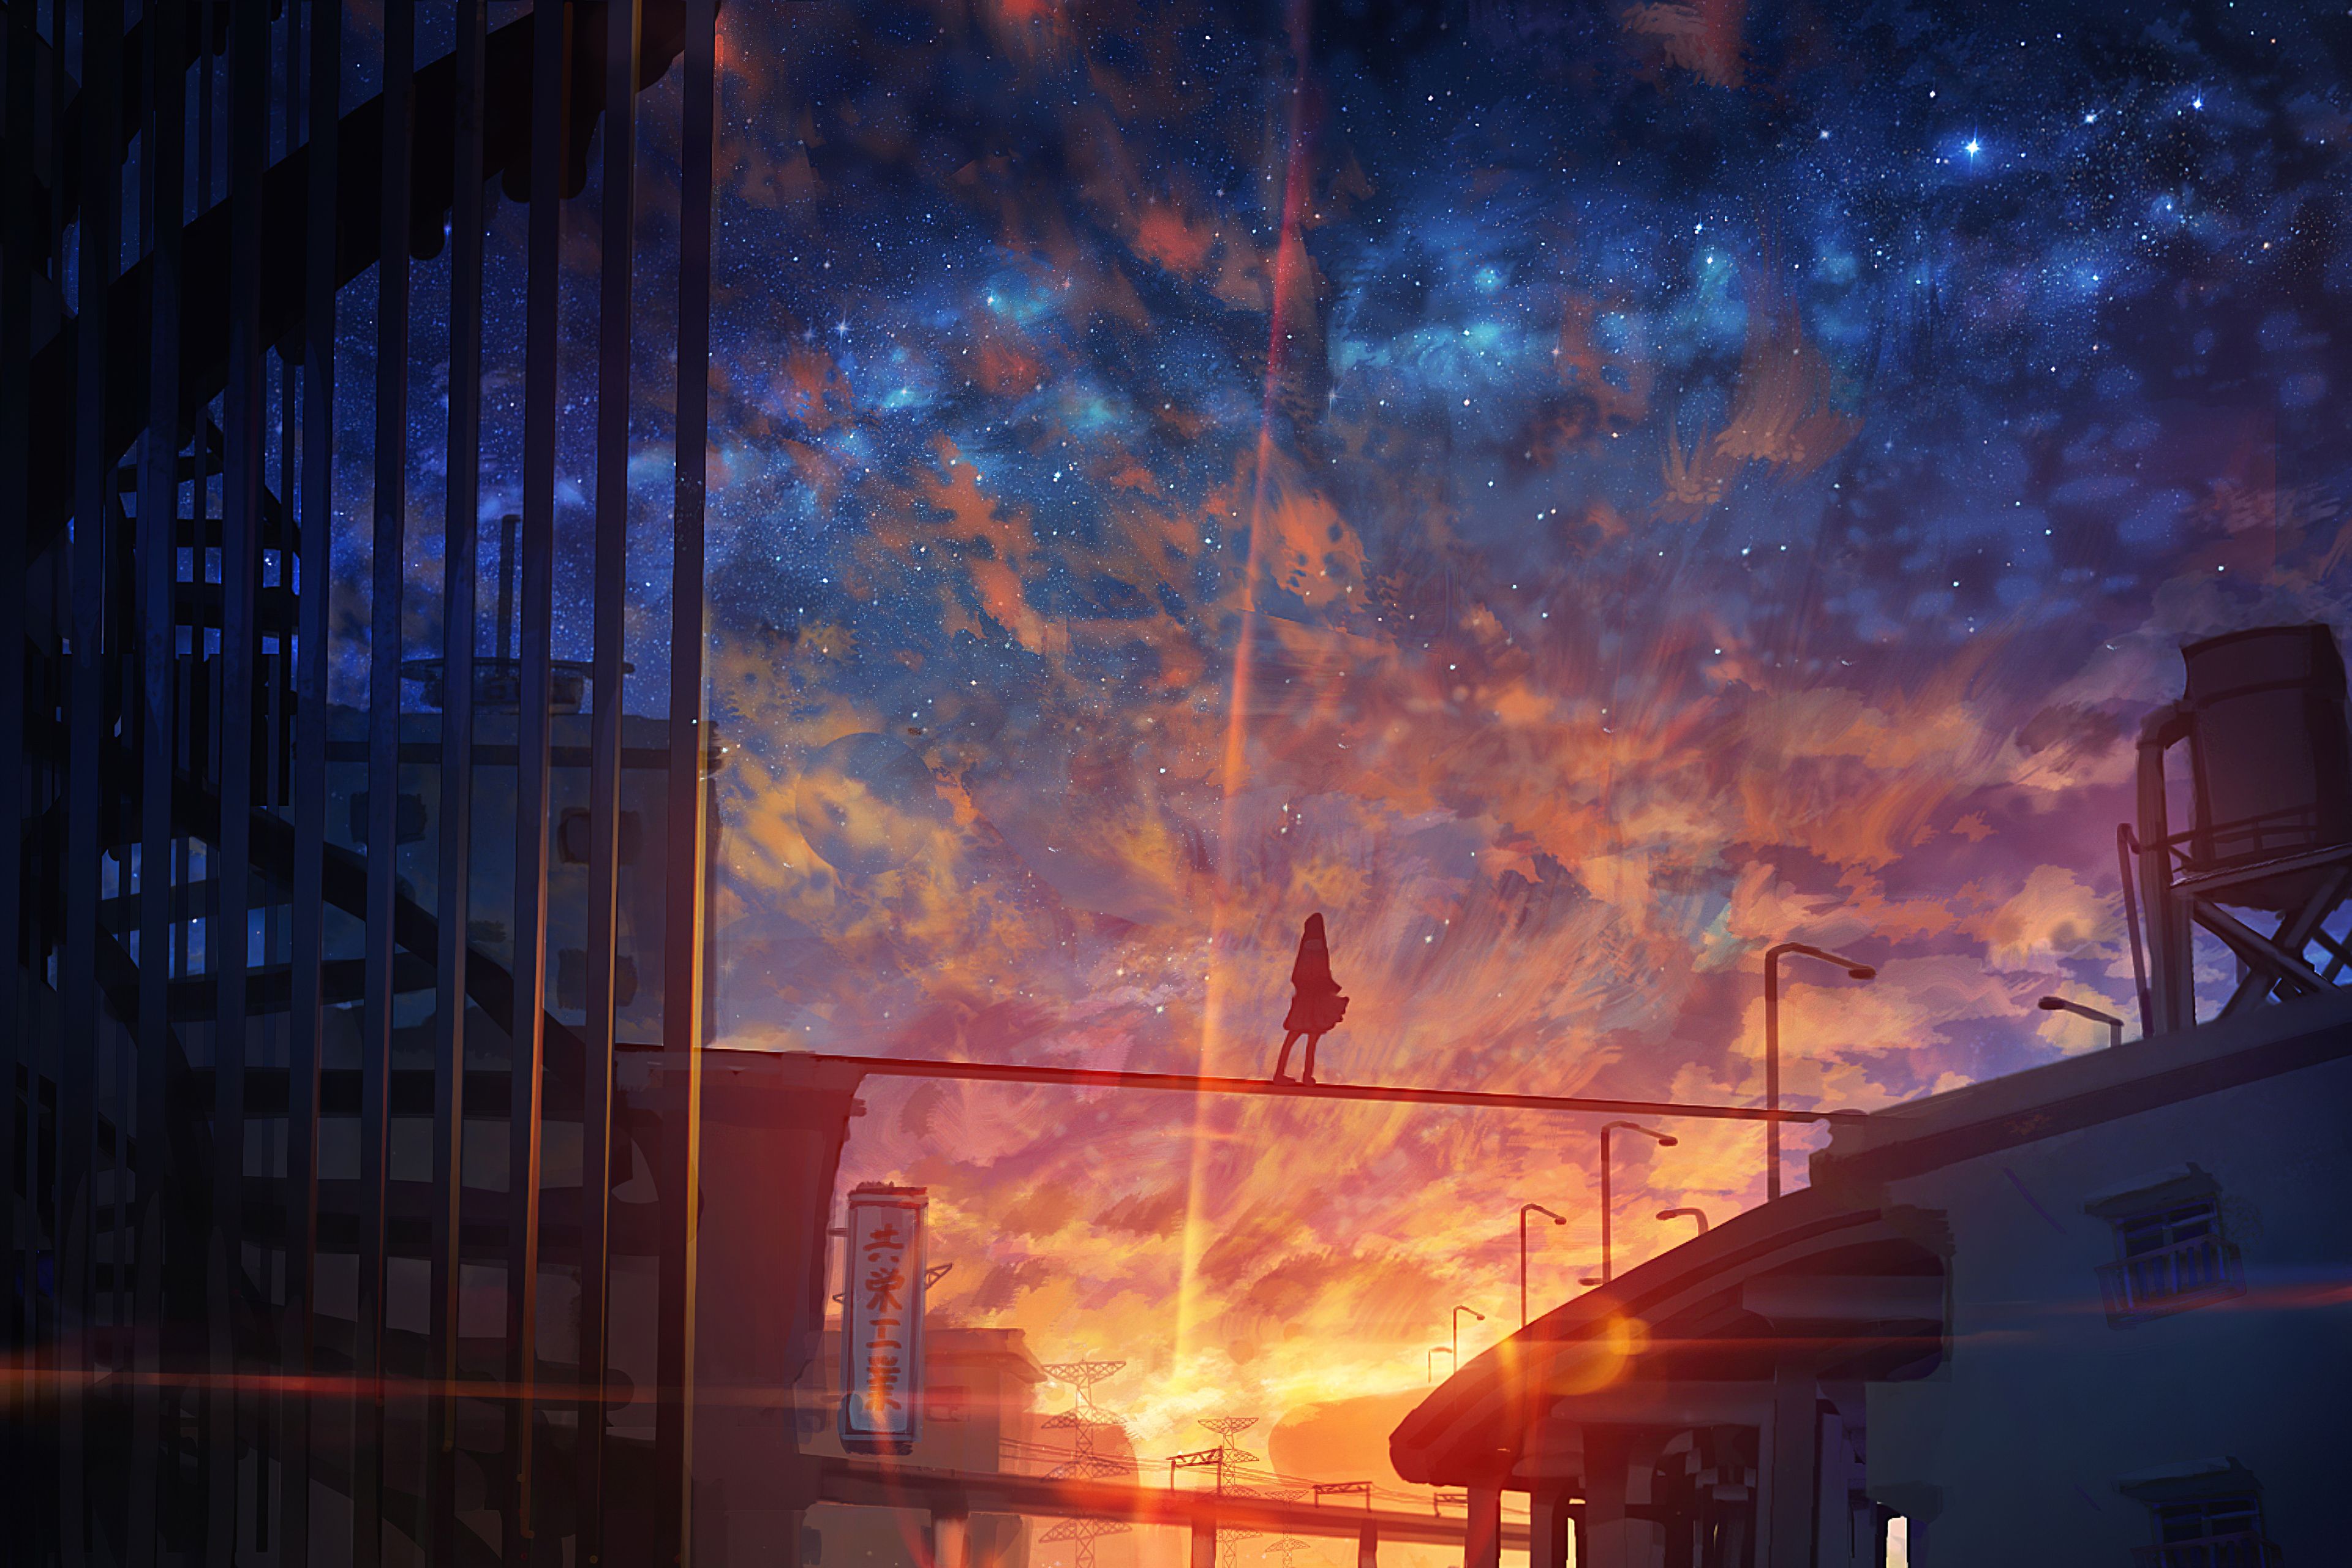 Anime Sky Wallpaper 4k - Anime Sky Wallpaper 4k | Bodbocwasuon